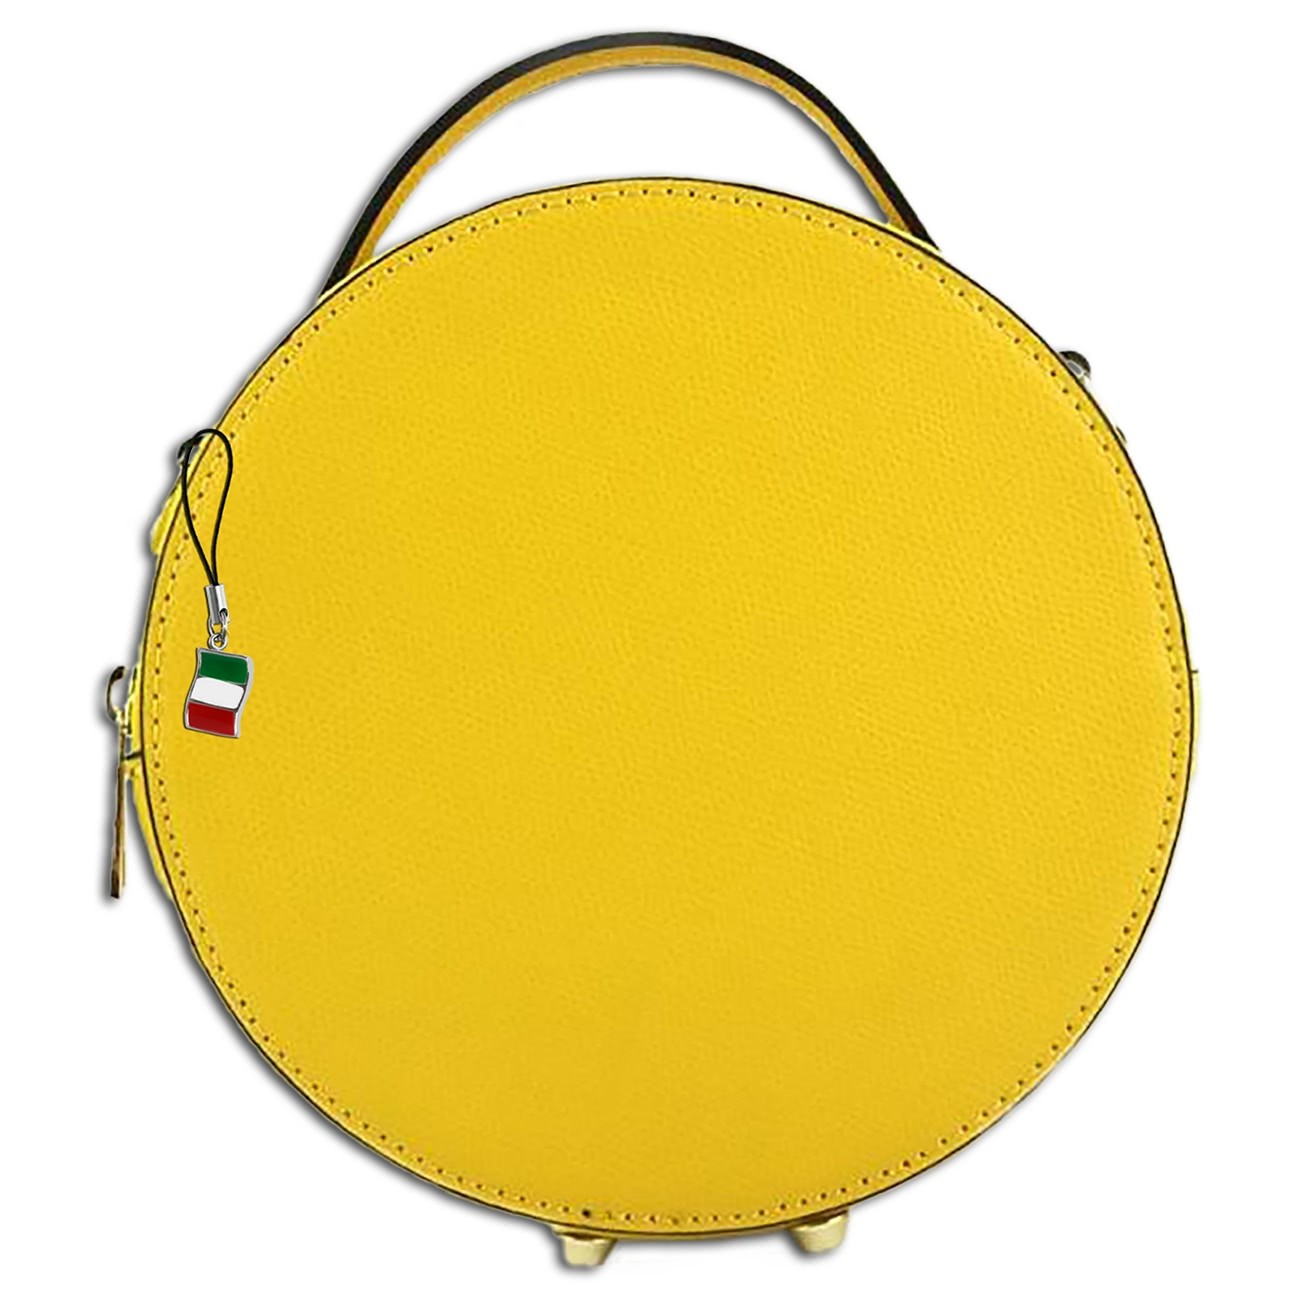 Florence runde Damen Schultertasche echtes Leder Handtasche gelb OTF123Y